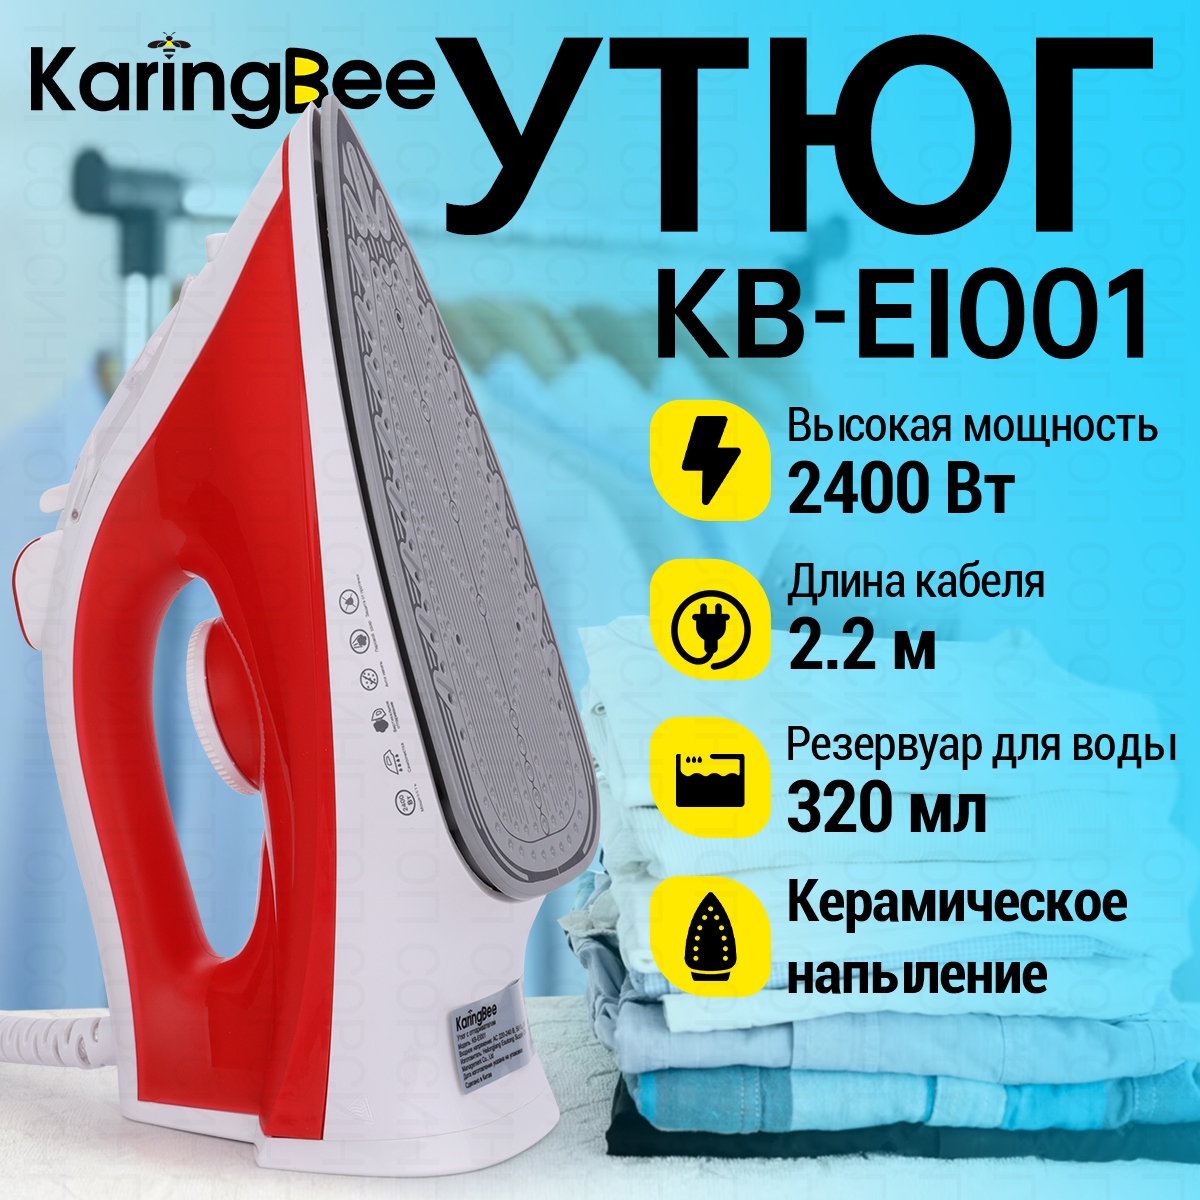 Утюг Karingbee KB-EI001 белый, красный трудно быть другом повесть штанько в н